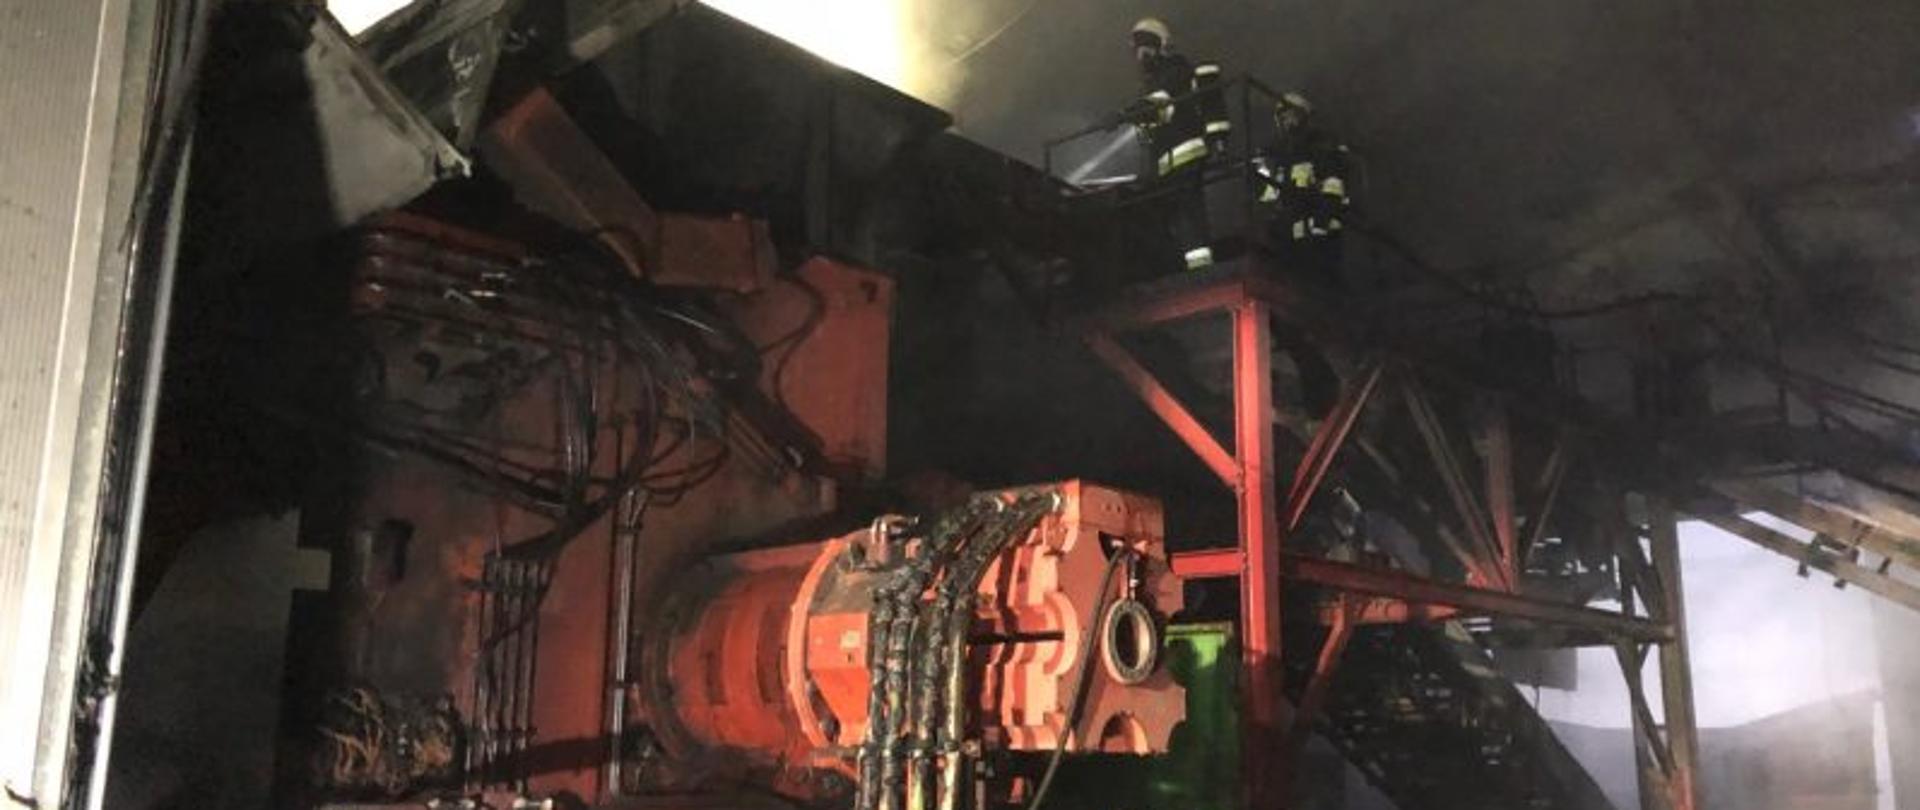 Strażacy gaszący pożar maszyny od której zaczął się pożar w sortowni śmieci 